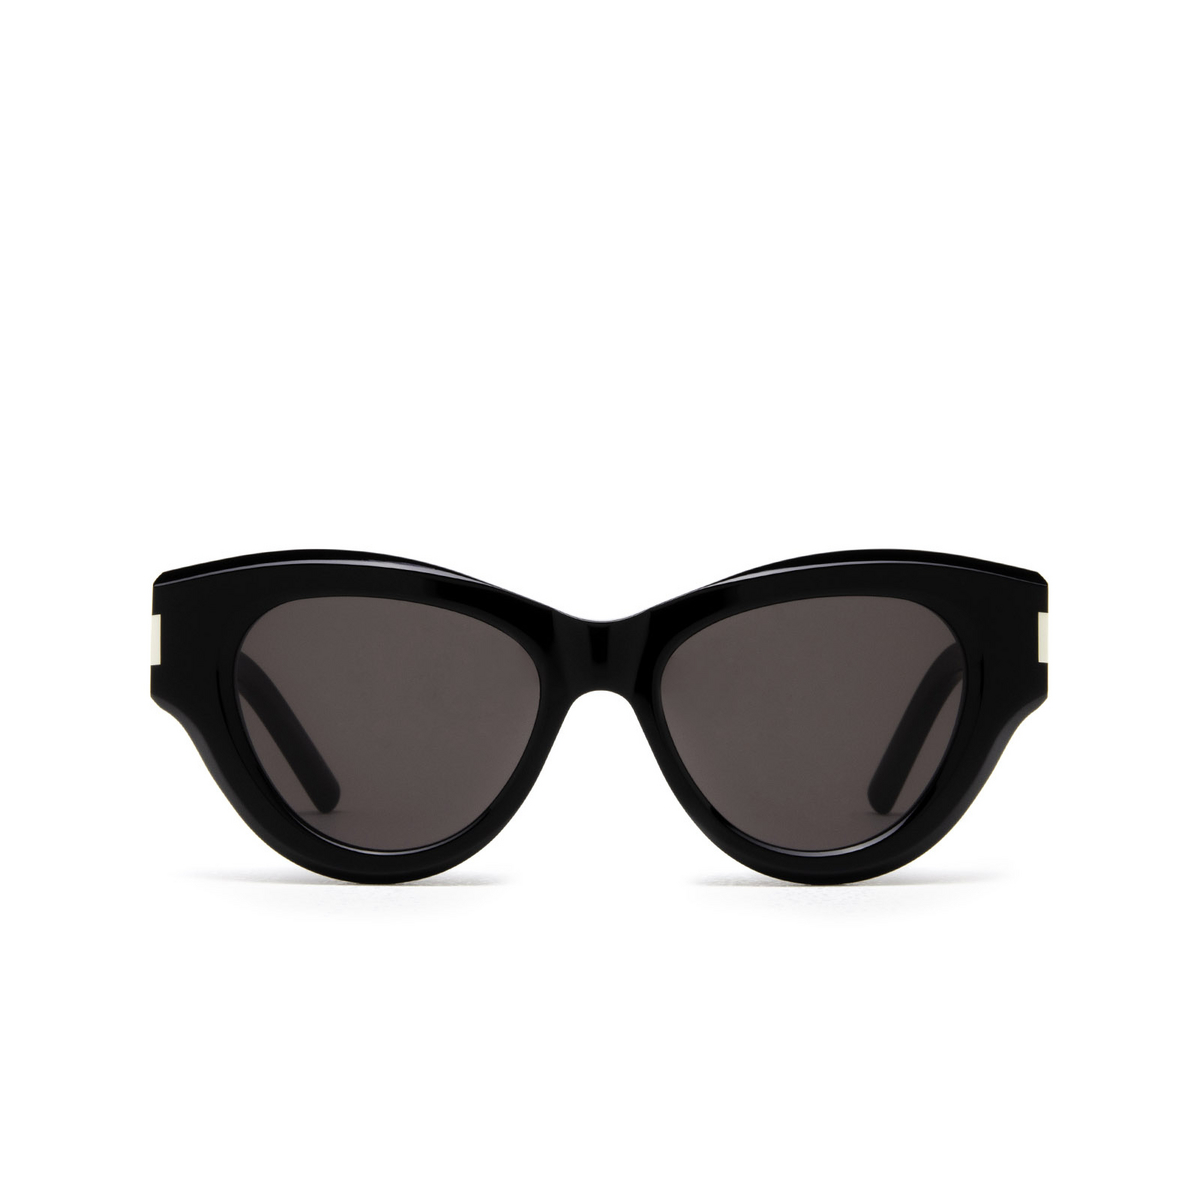 Saint Laurent® Cat-eye Sunglasses: SL 506 color Black 001 - front view.